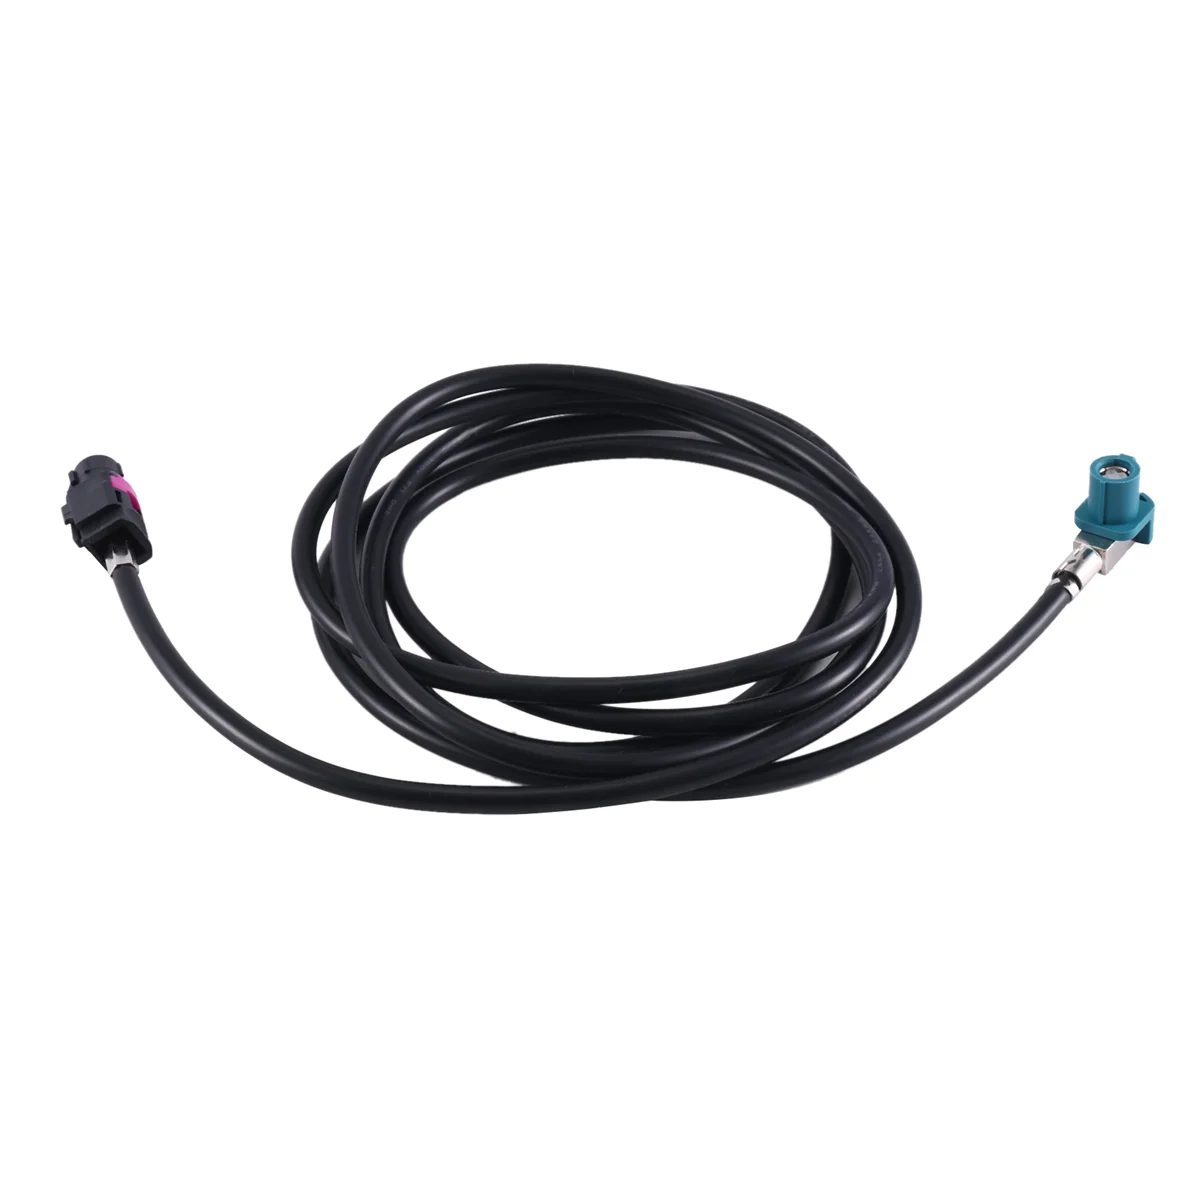 4-контактный кабель HSD типа HSD для автомобильной GPS-навигации, аудио высокоскоростной проводки